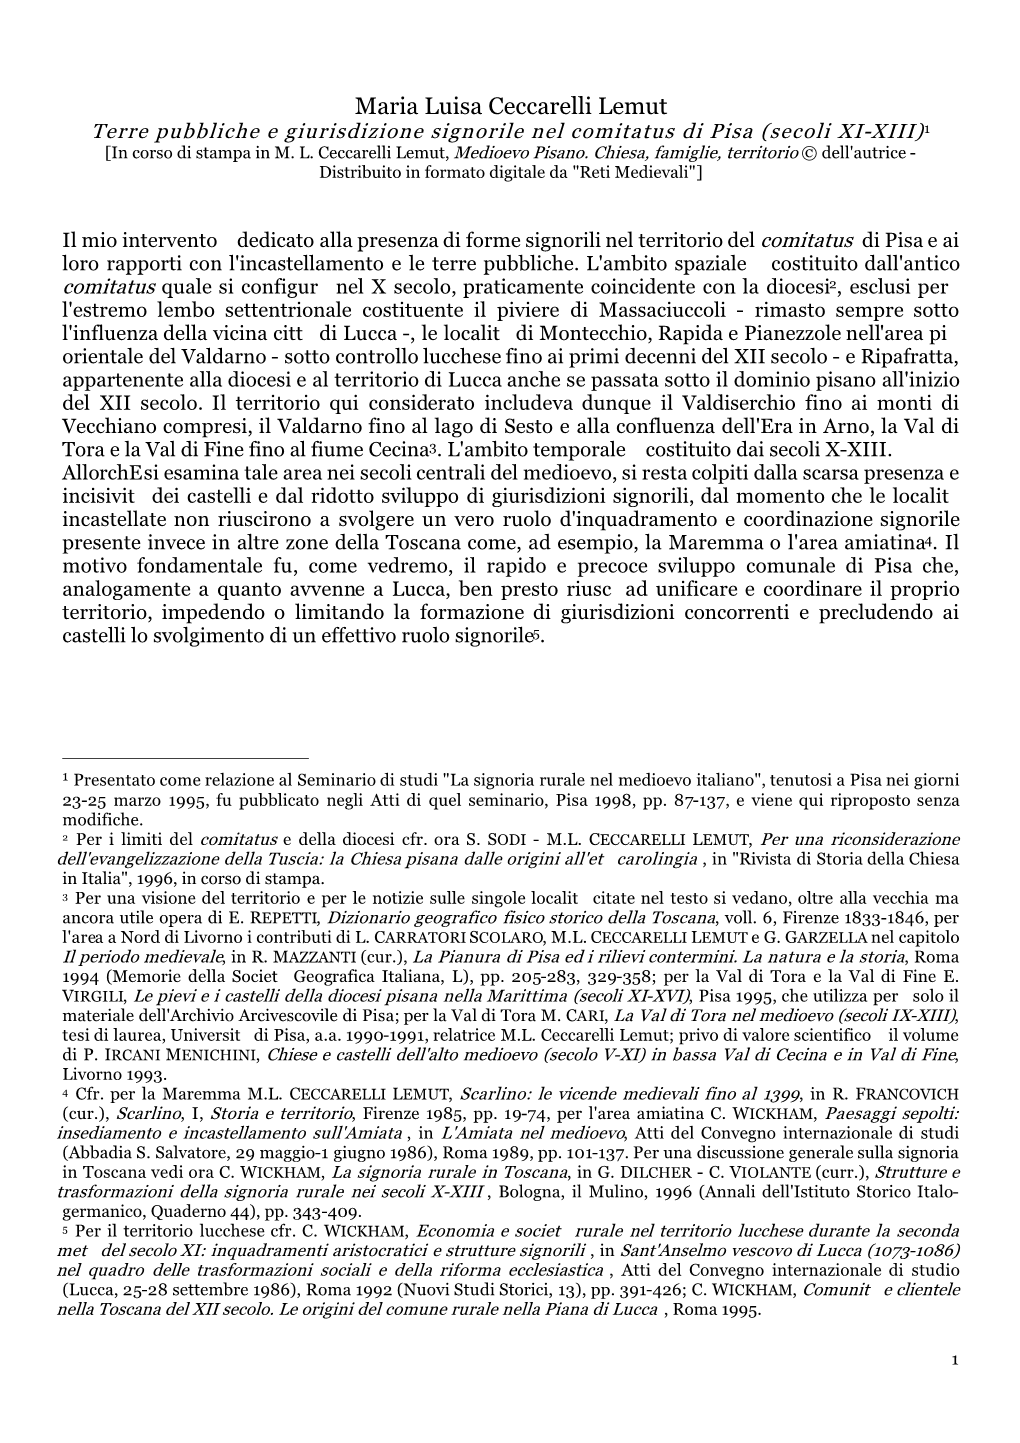 1 Maria Luisa Ceccarelli Lemut Terre Pubbliche E Giurisdizione Signorile Nel Comitatus Di Pisa (Secoli XI-XIII)1 [In Corso Di Stampa in M